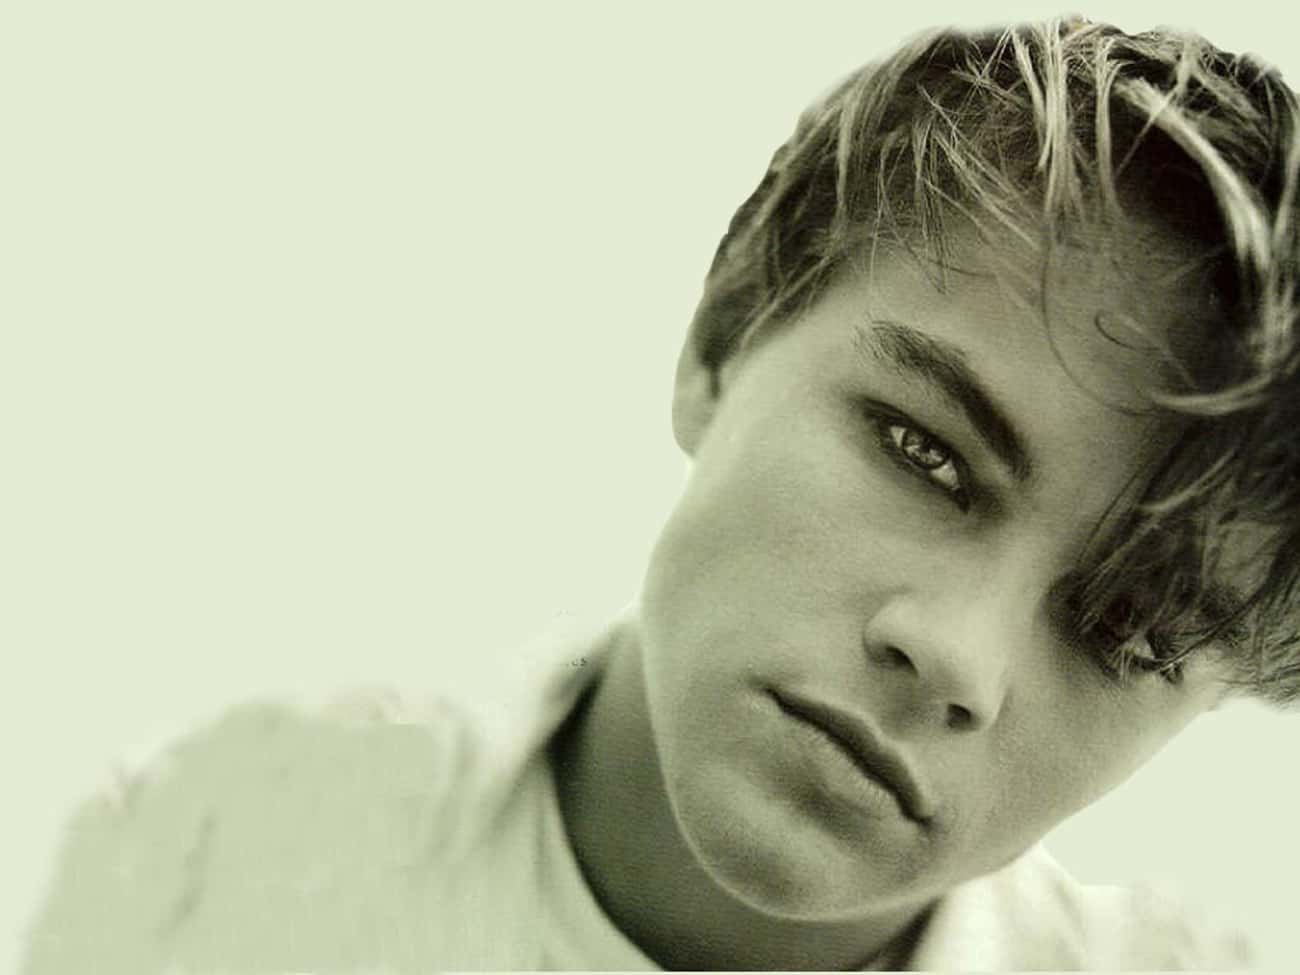 A Young Leonardo DiCaprio 